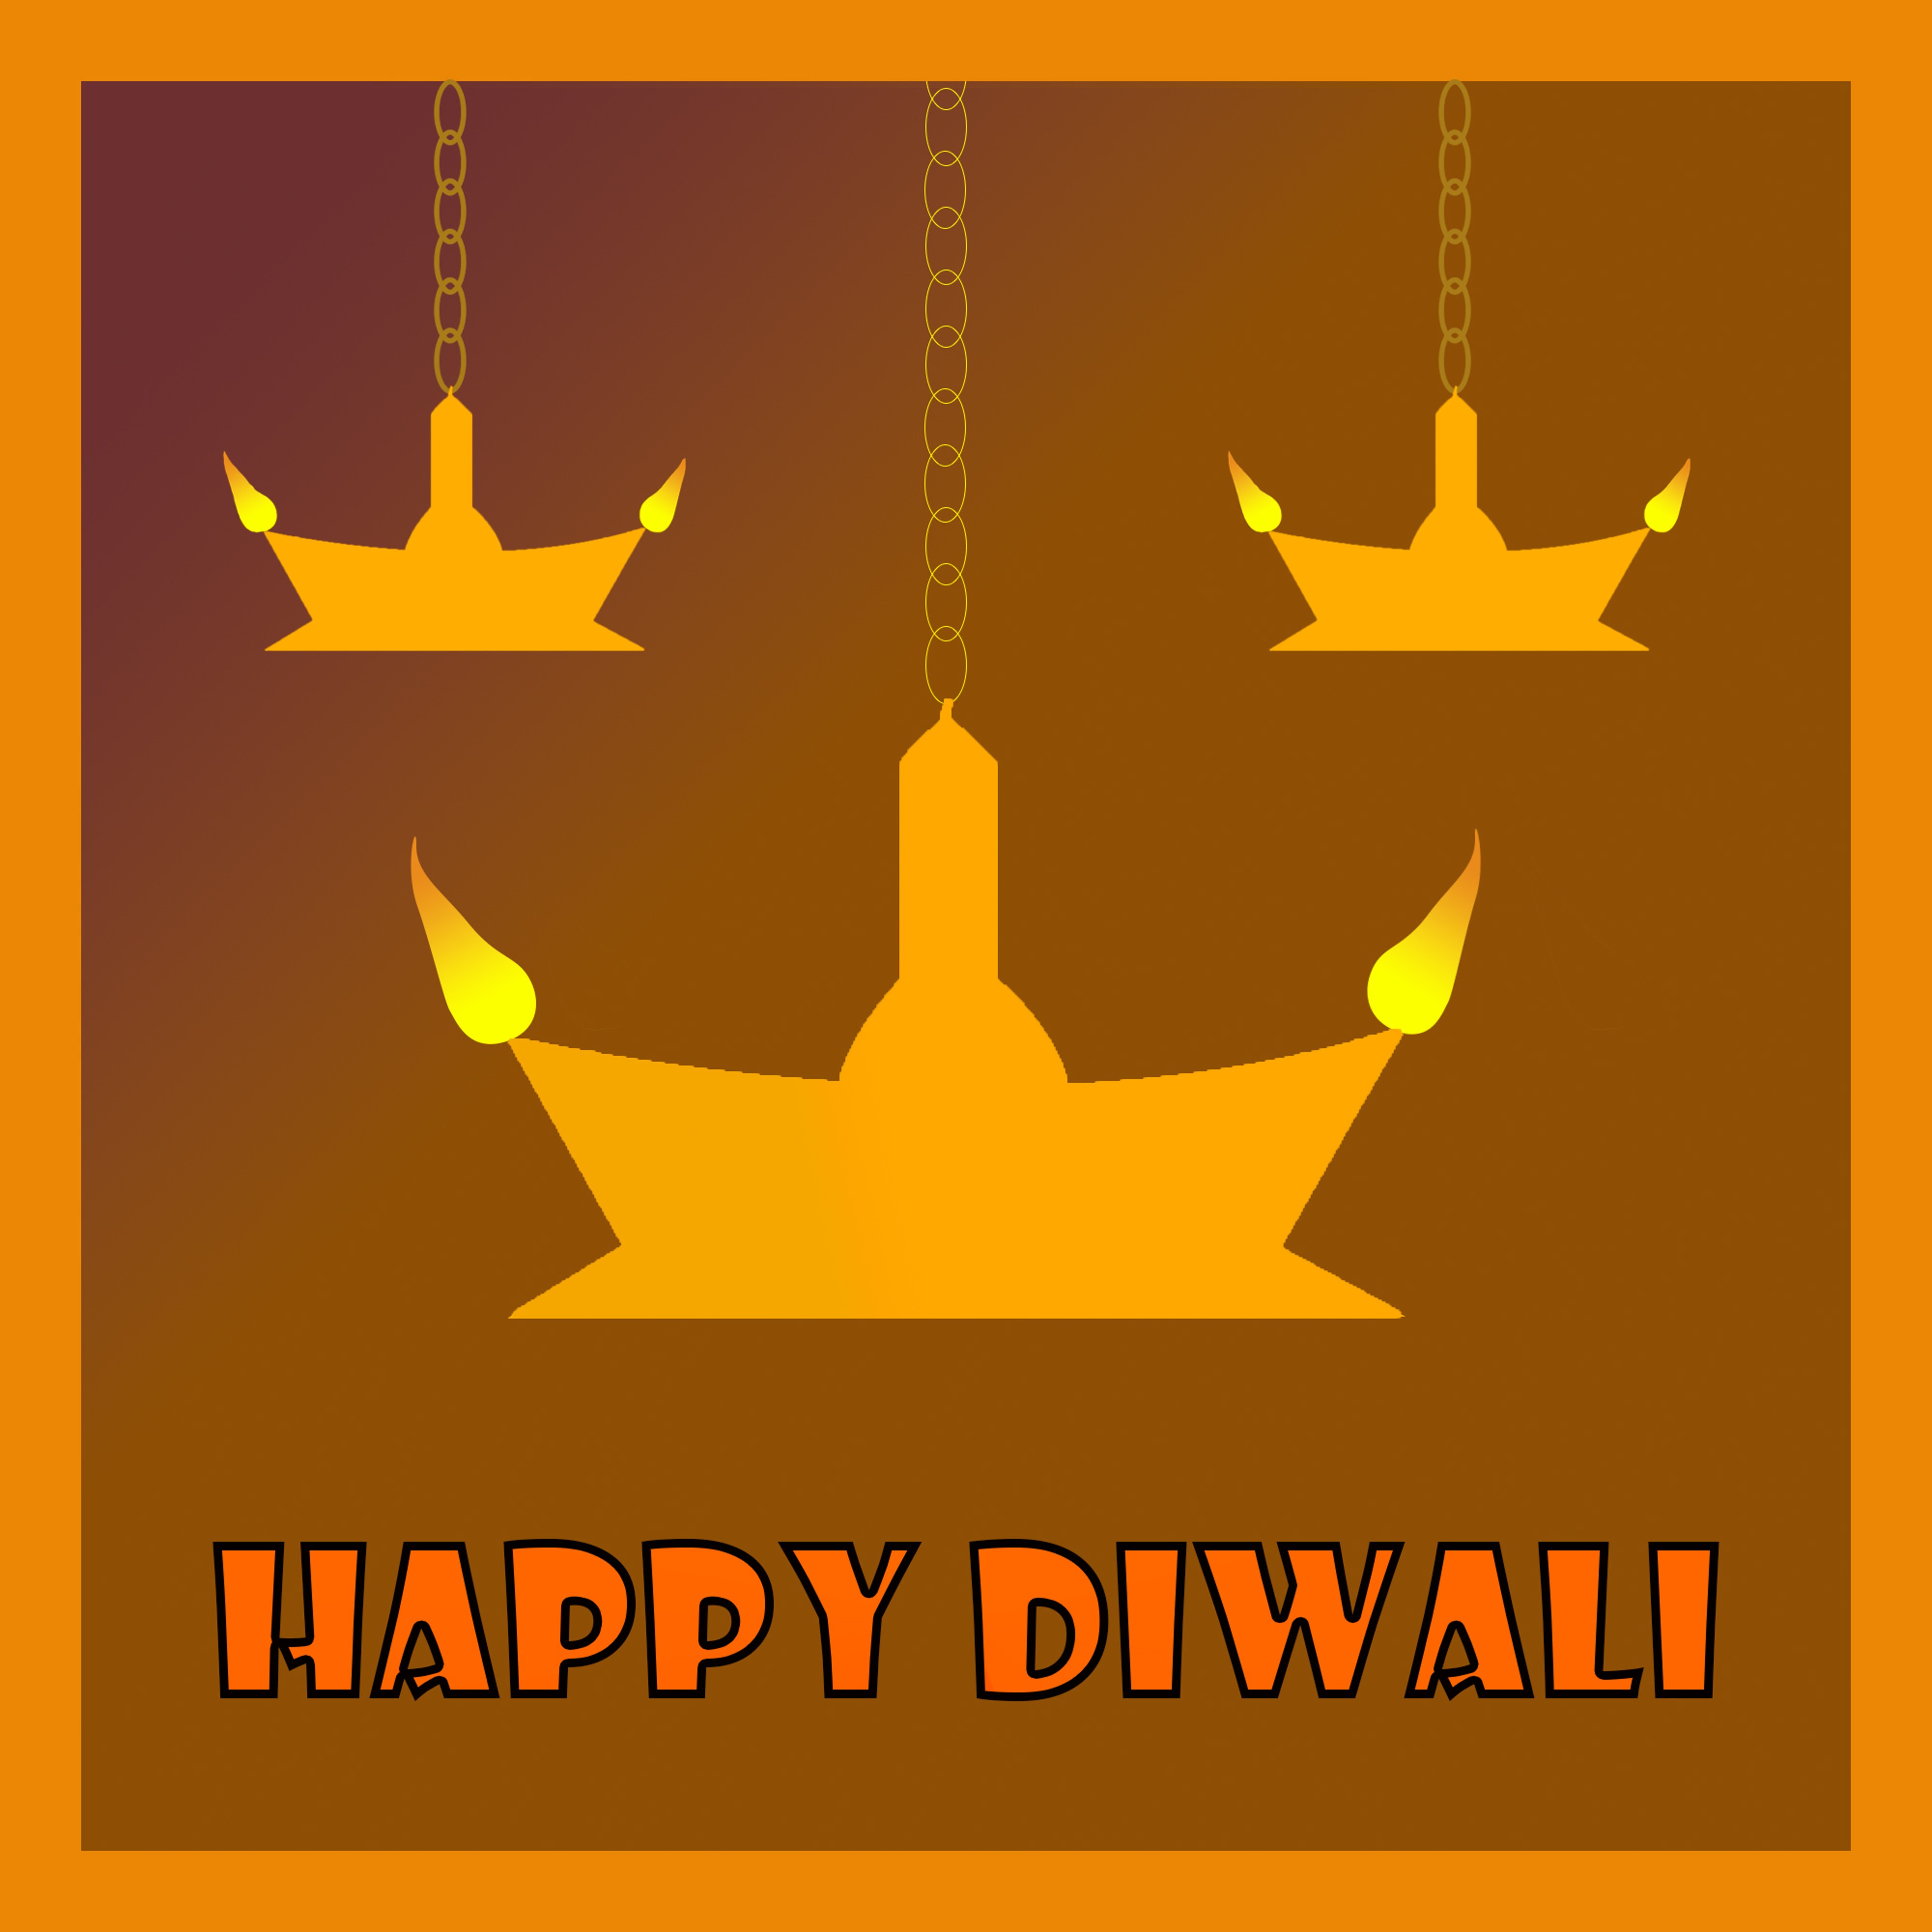 Diwali Greeting cover image.